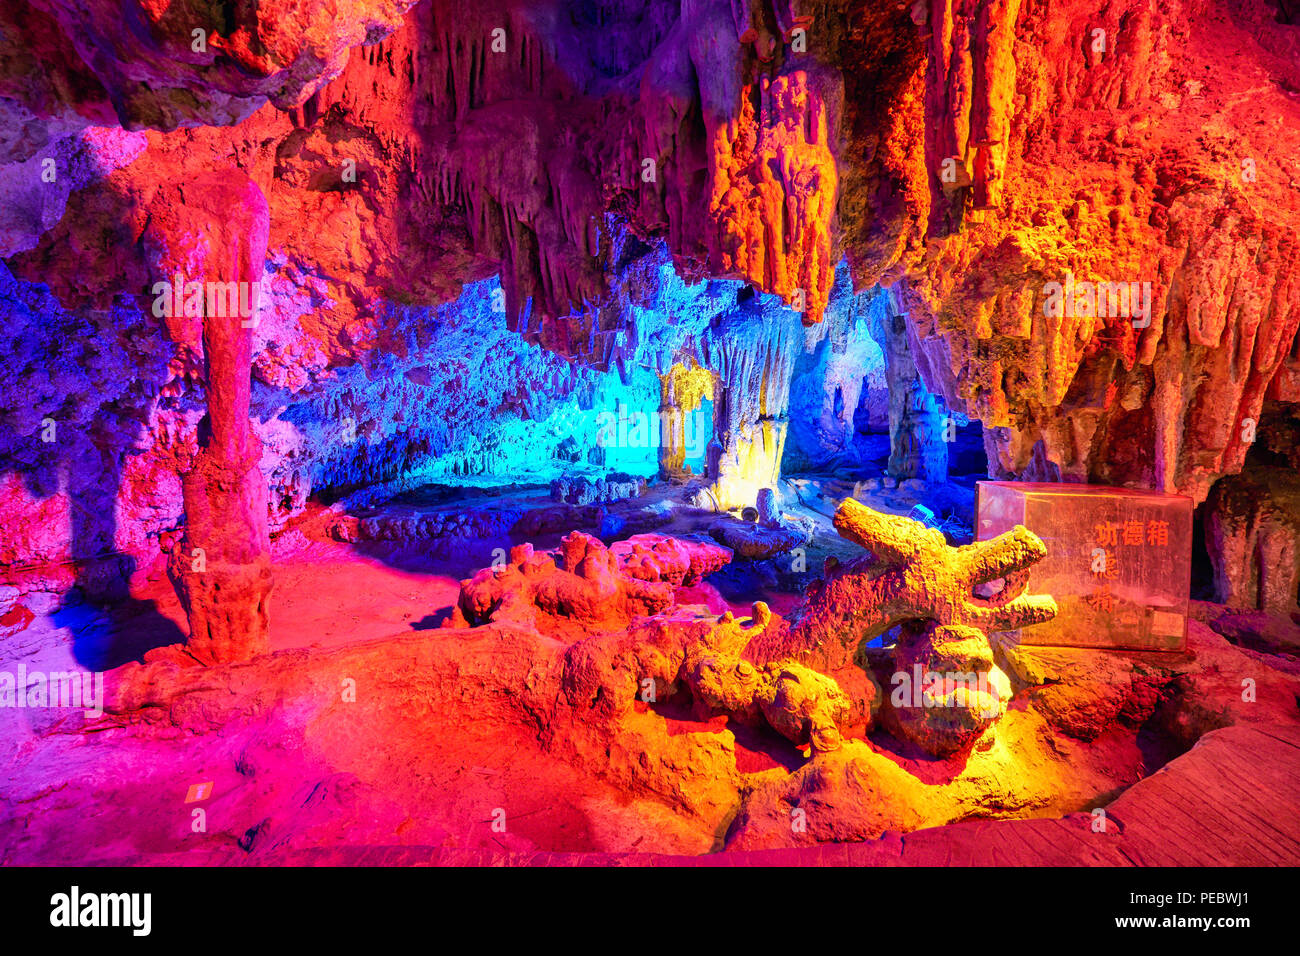 Dragon Shped Rock formazione ina grotta carsica, Zashui, Shaanxi, Cina Foto Stock